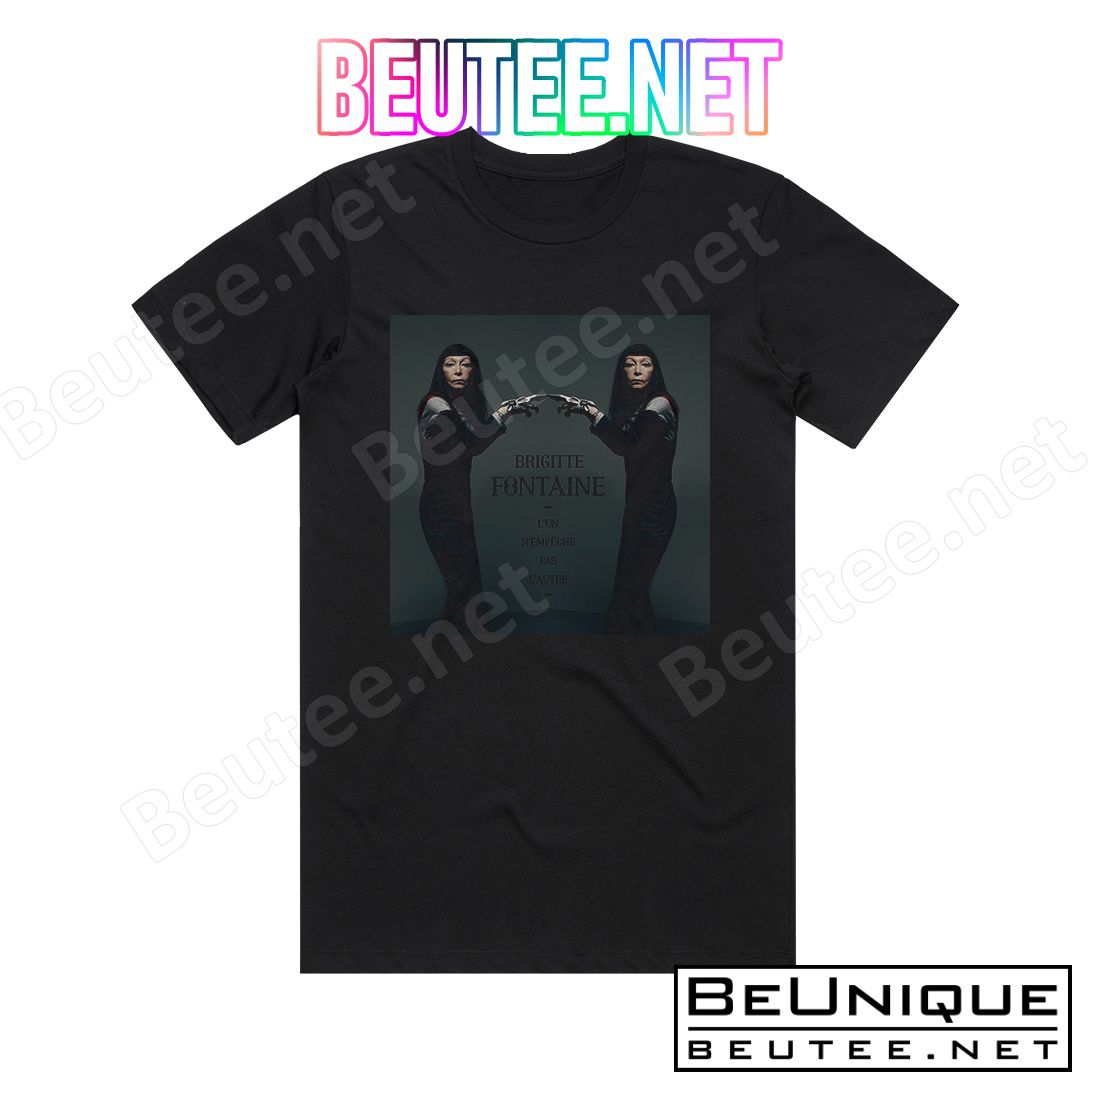 Brigitte Fontaine L'un N'empeche Pas L'autre Album Cover T-Shirt